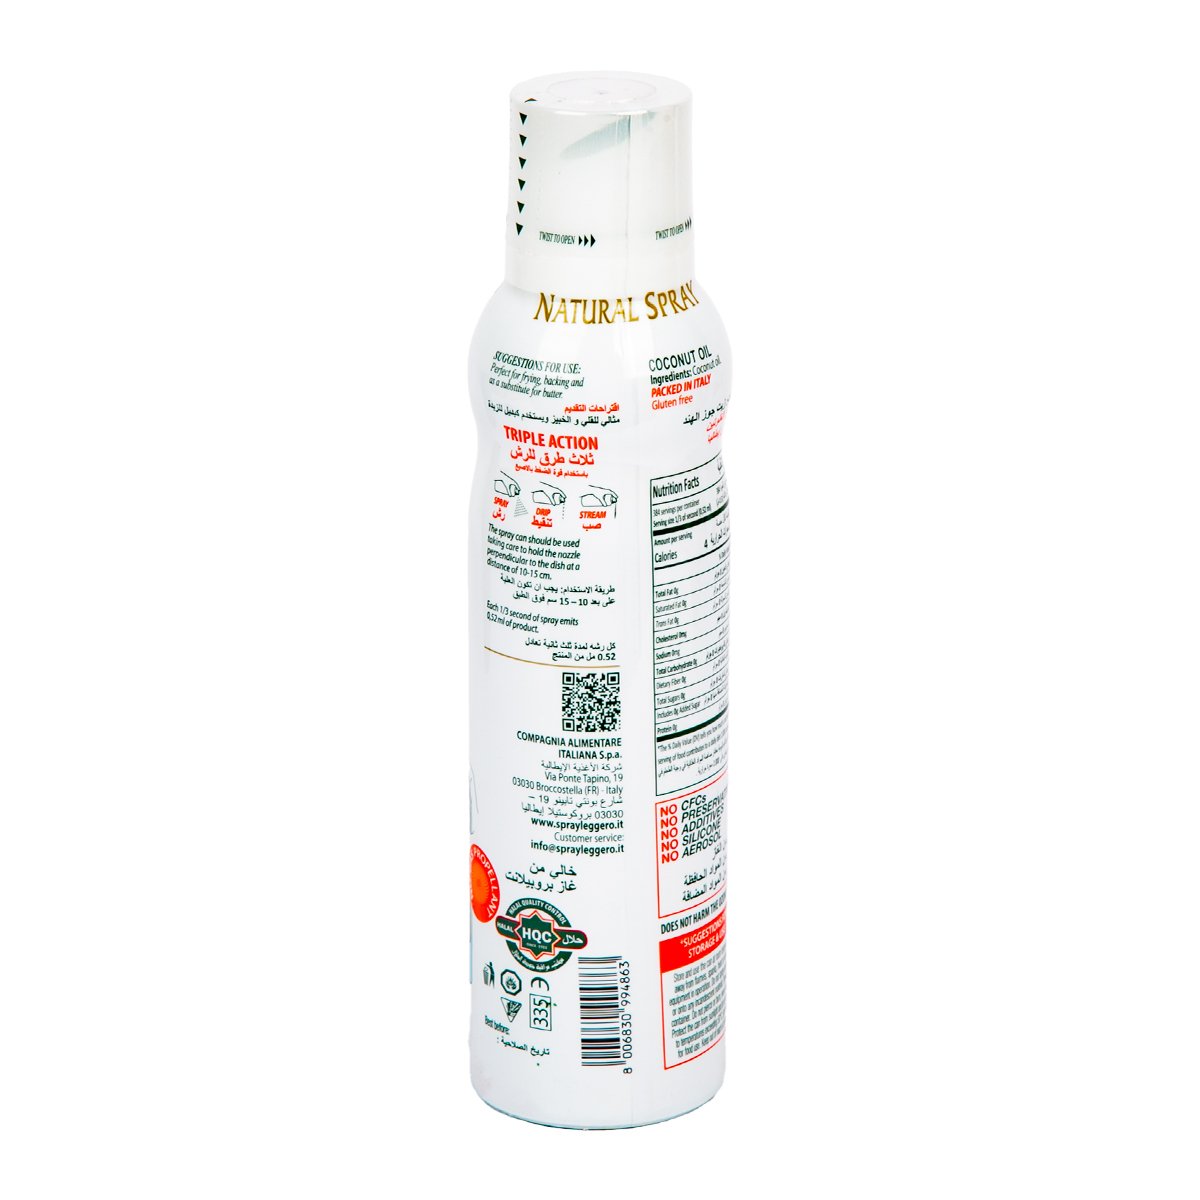 Mantova Coconut Oil Spray 200 ml